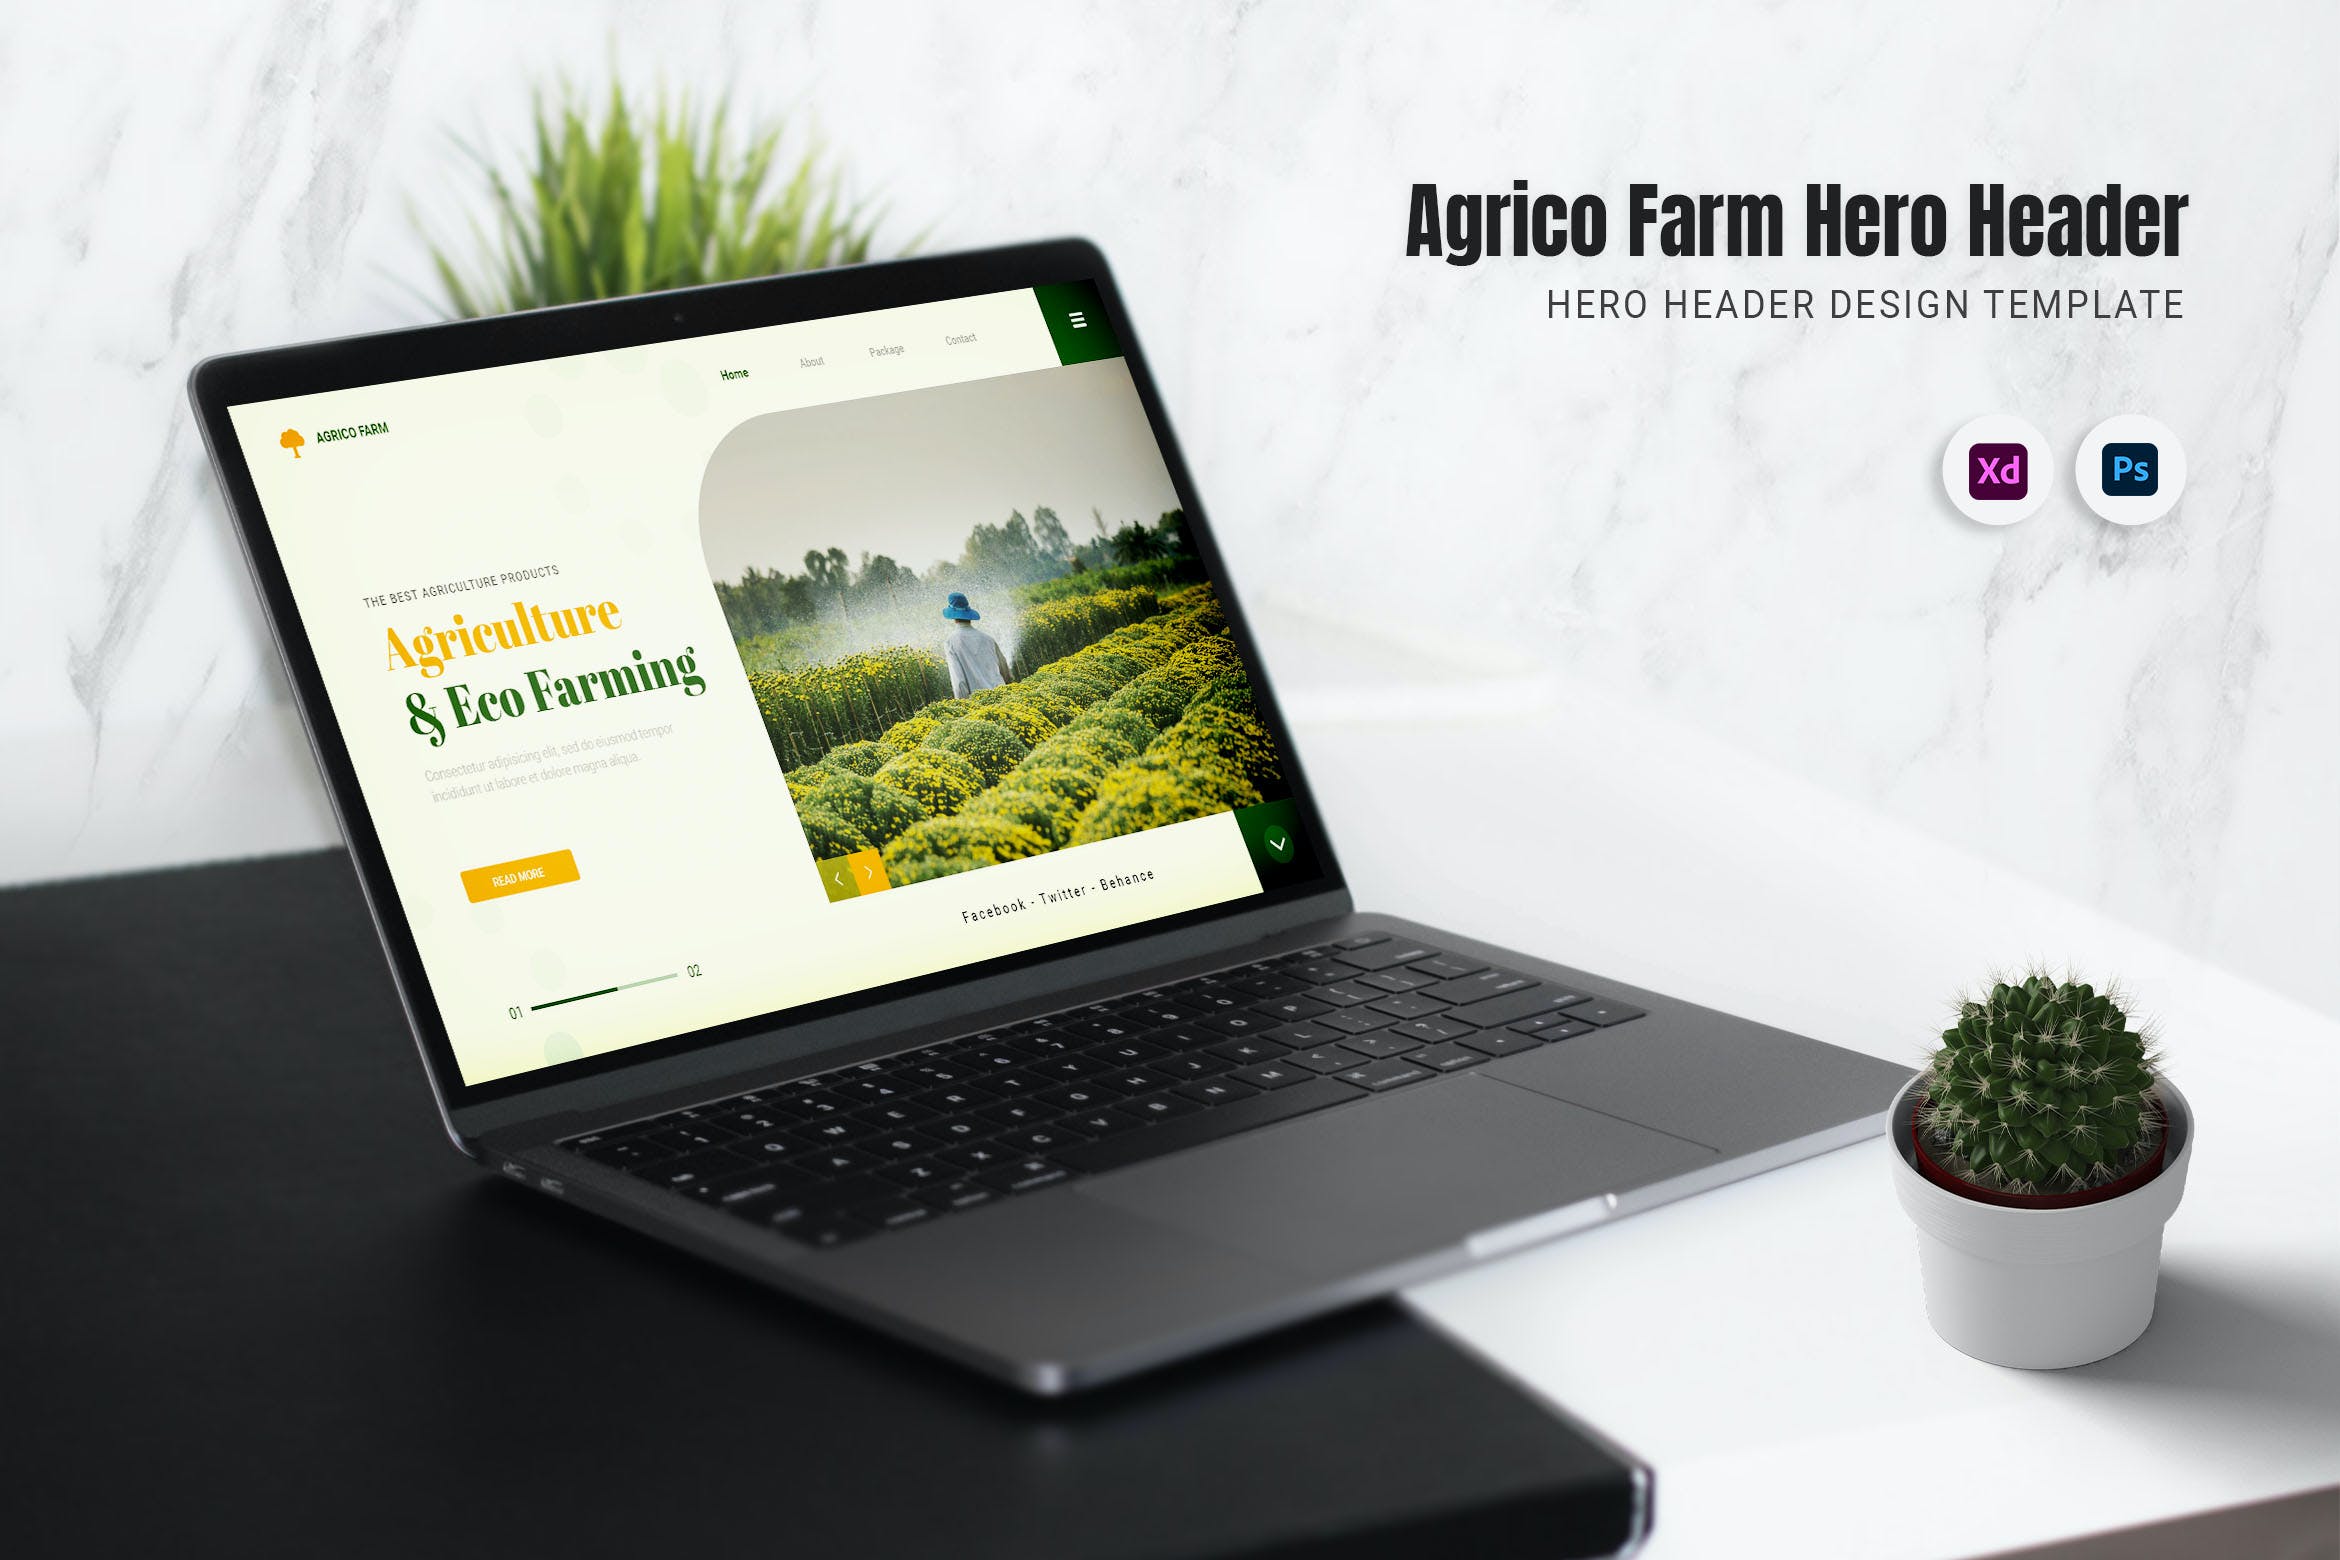 农场农业网站巨无霸Header设计模板 Agrico Farm Hero Header 样机素材 第1张